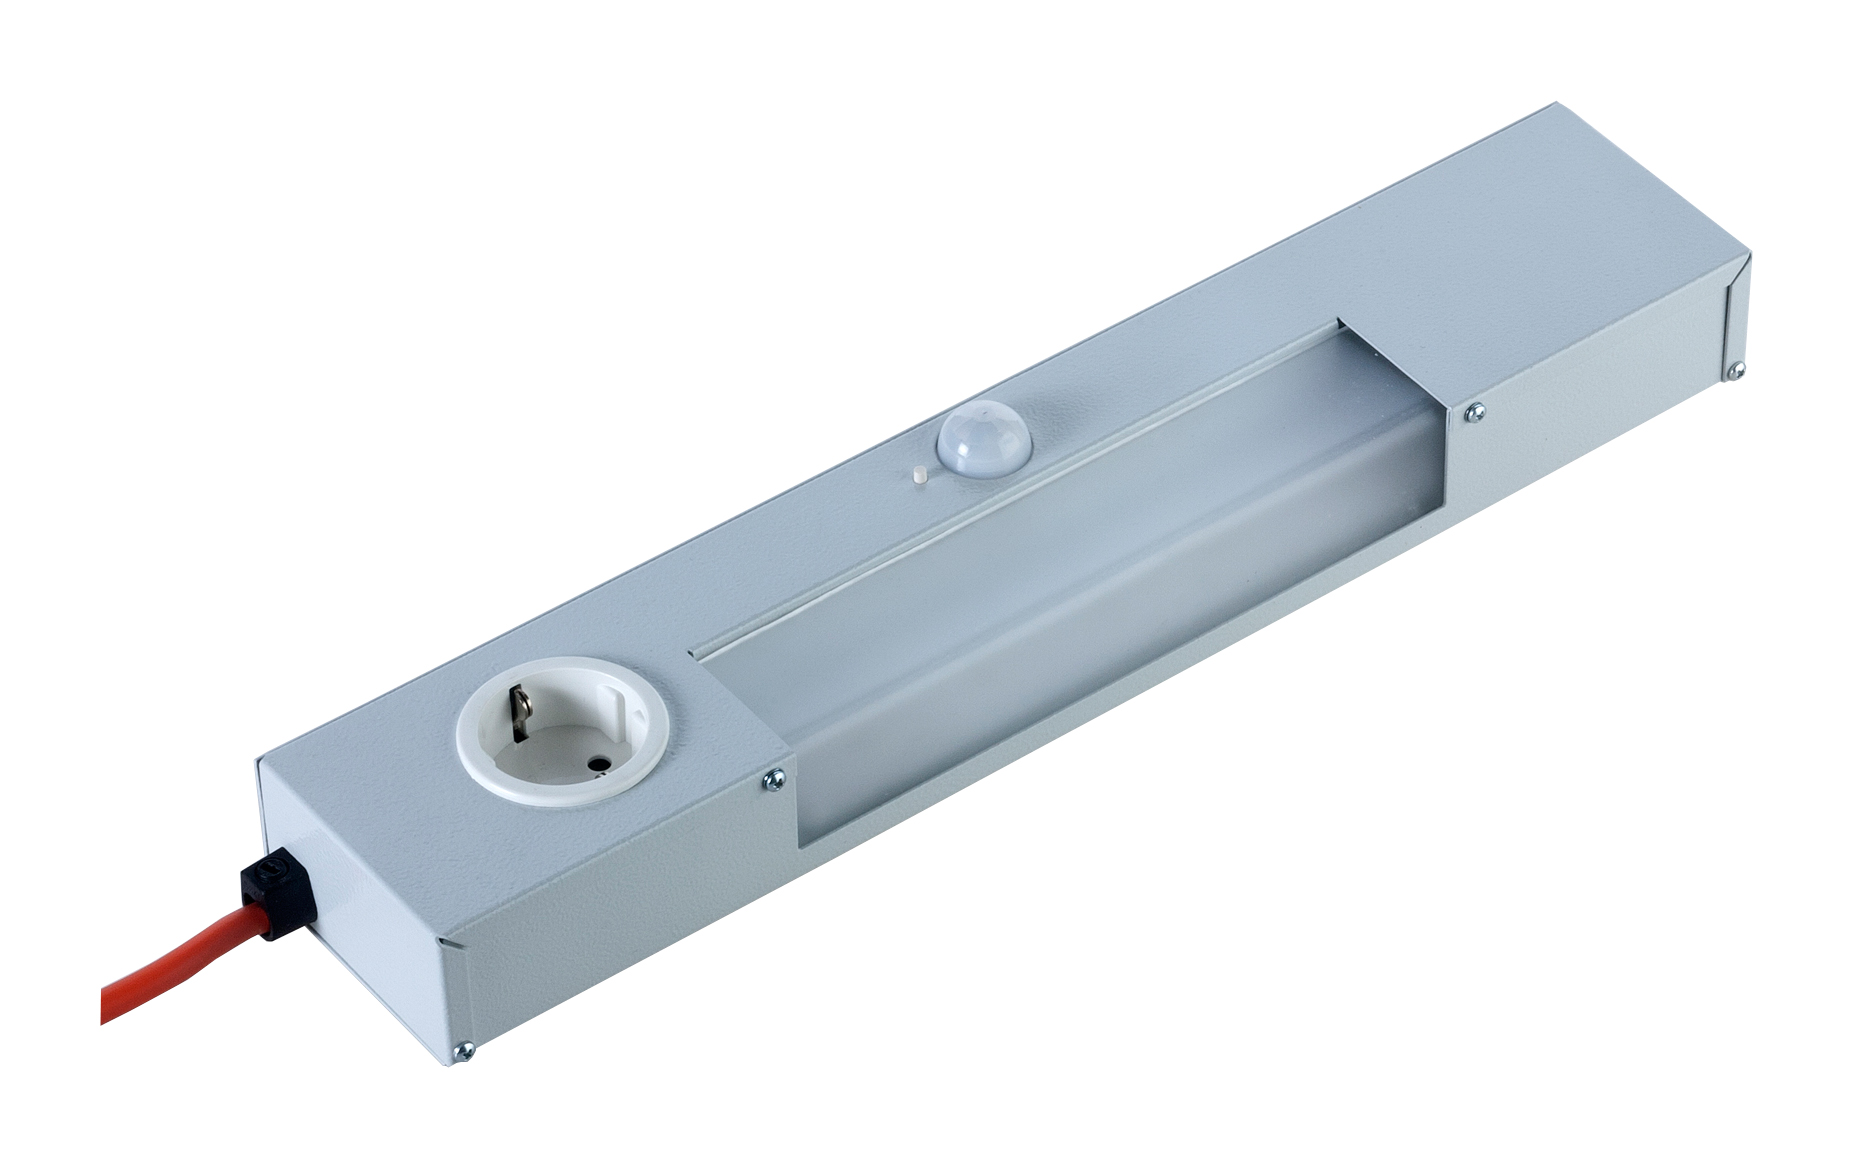 Abbildung LED Schaltschrankleuchte LED-Magneto-Lux 8 Watt, 110-240 Volt/50-60 Hz | Magnetbefestigung, ab 400mm Schrankbreite